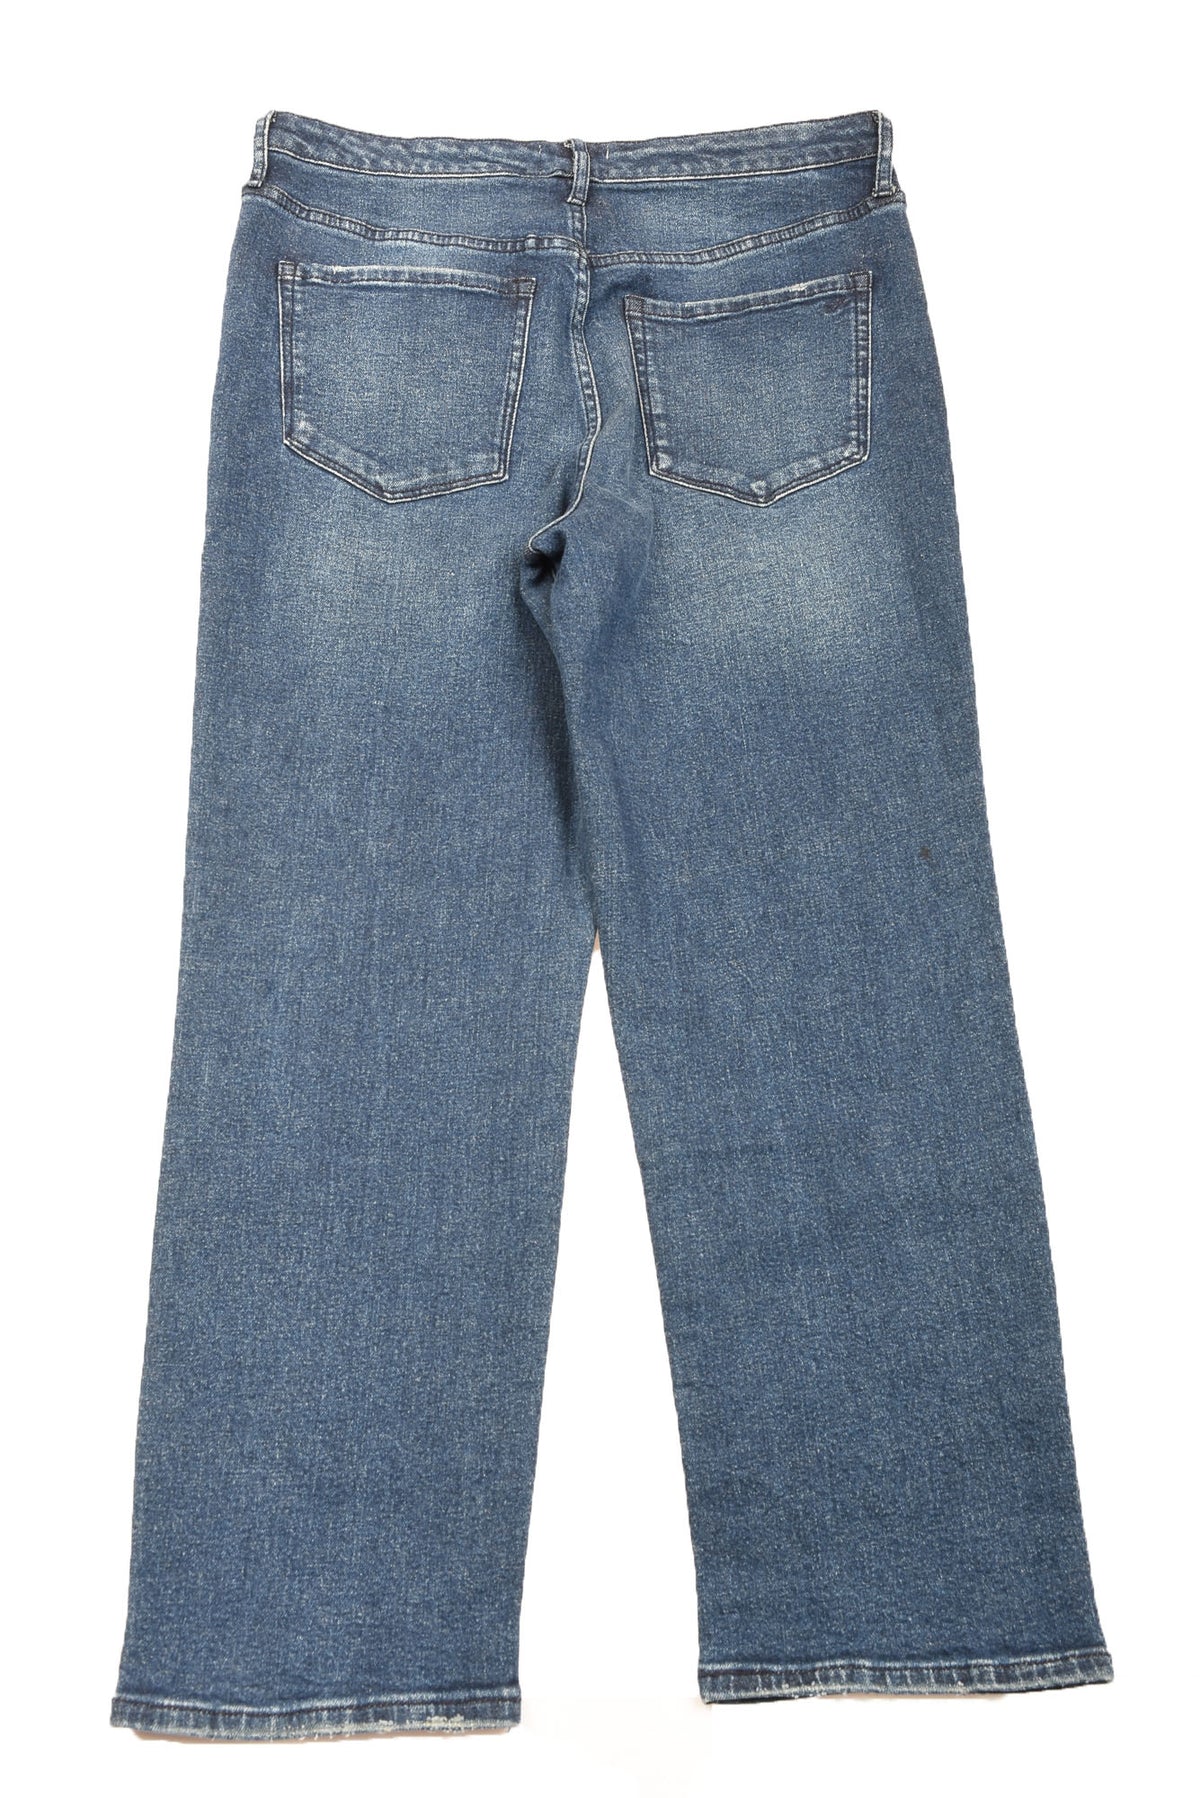 William Rast Size 30 Women&#39;s Jeans